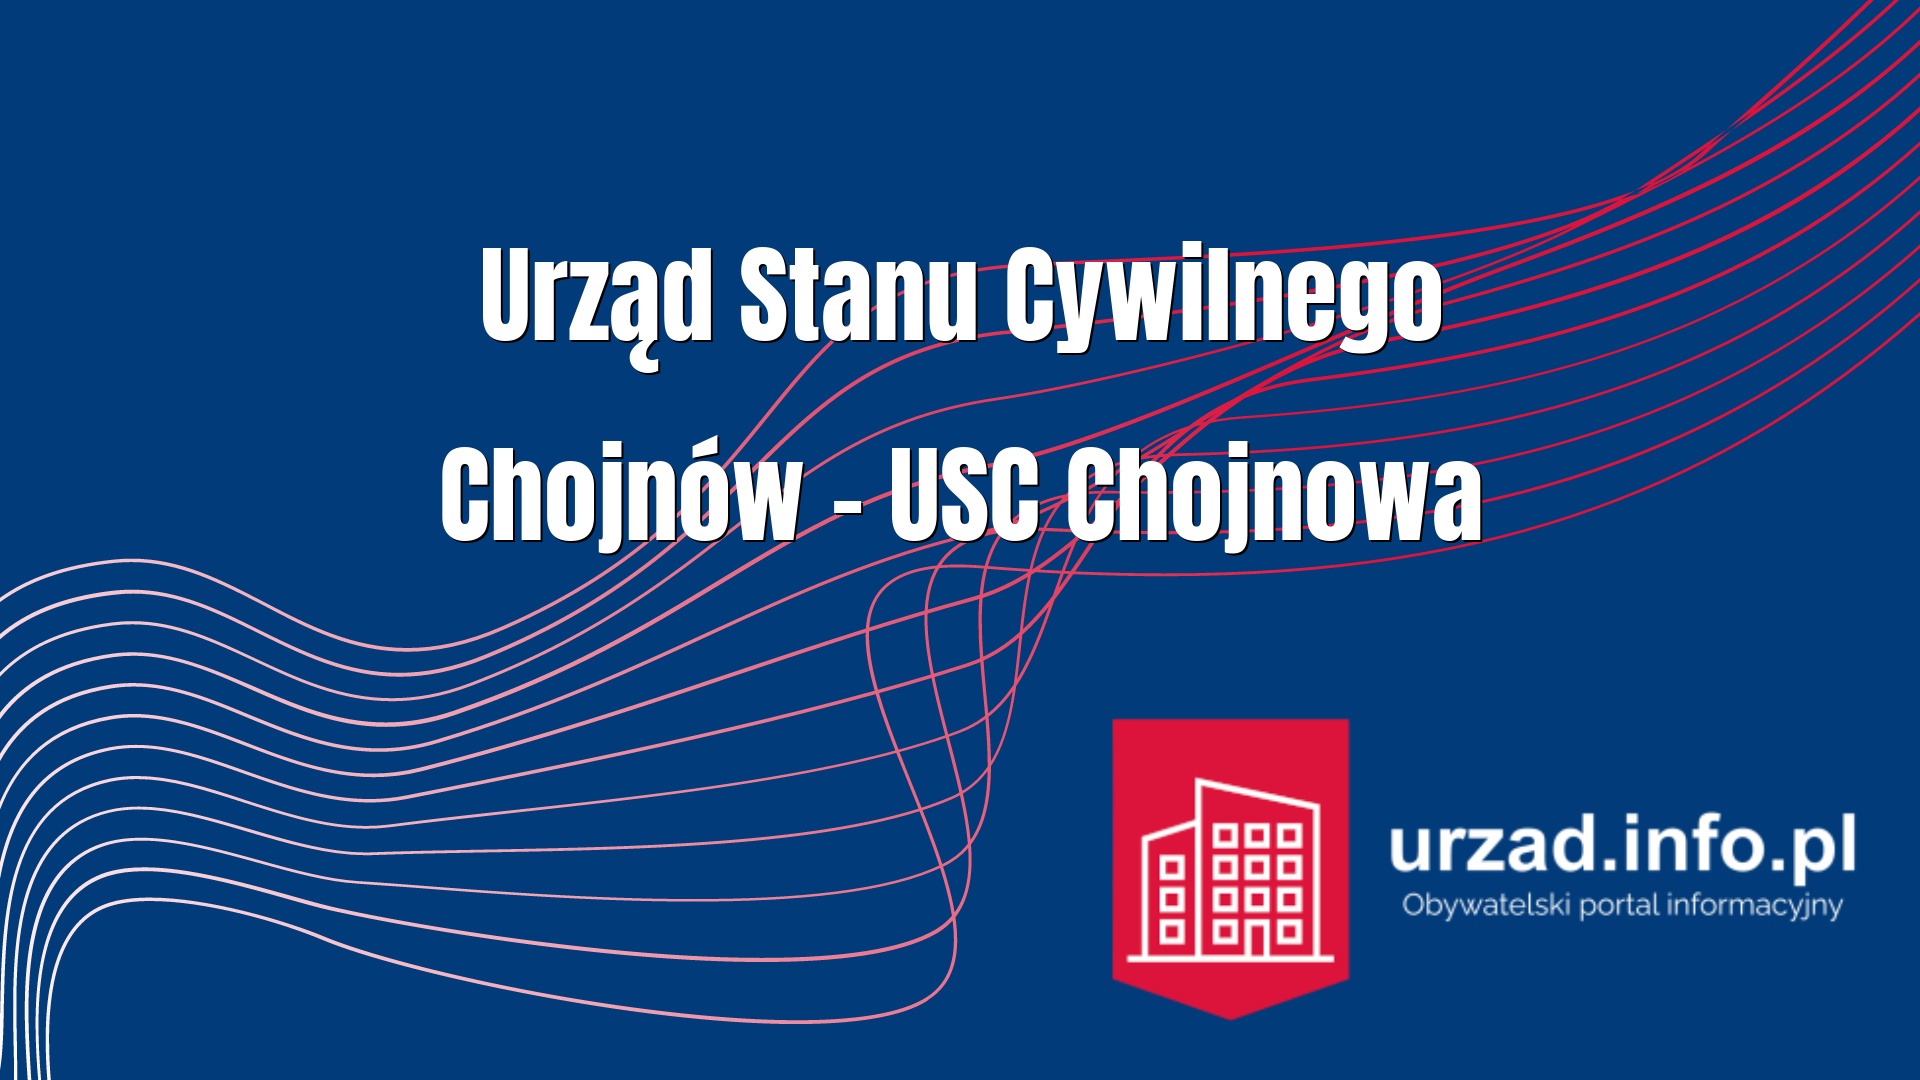 Urząd Stanu Cywilnego Chojnów – USC Chojnowa